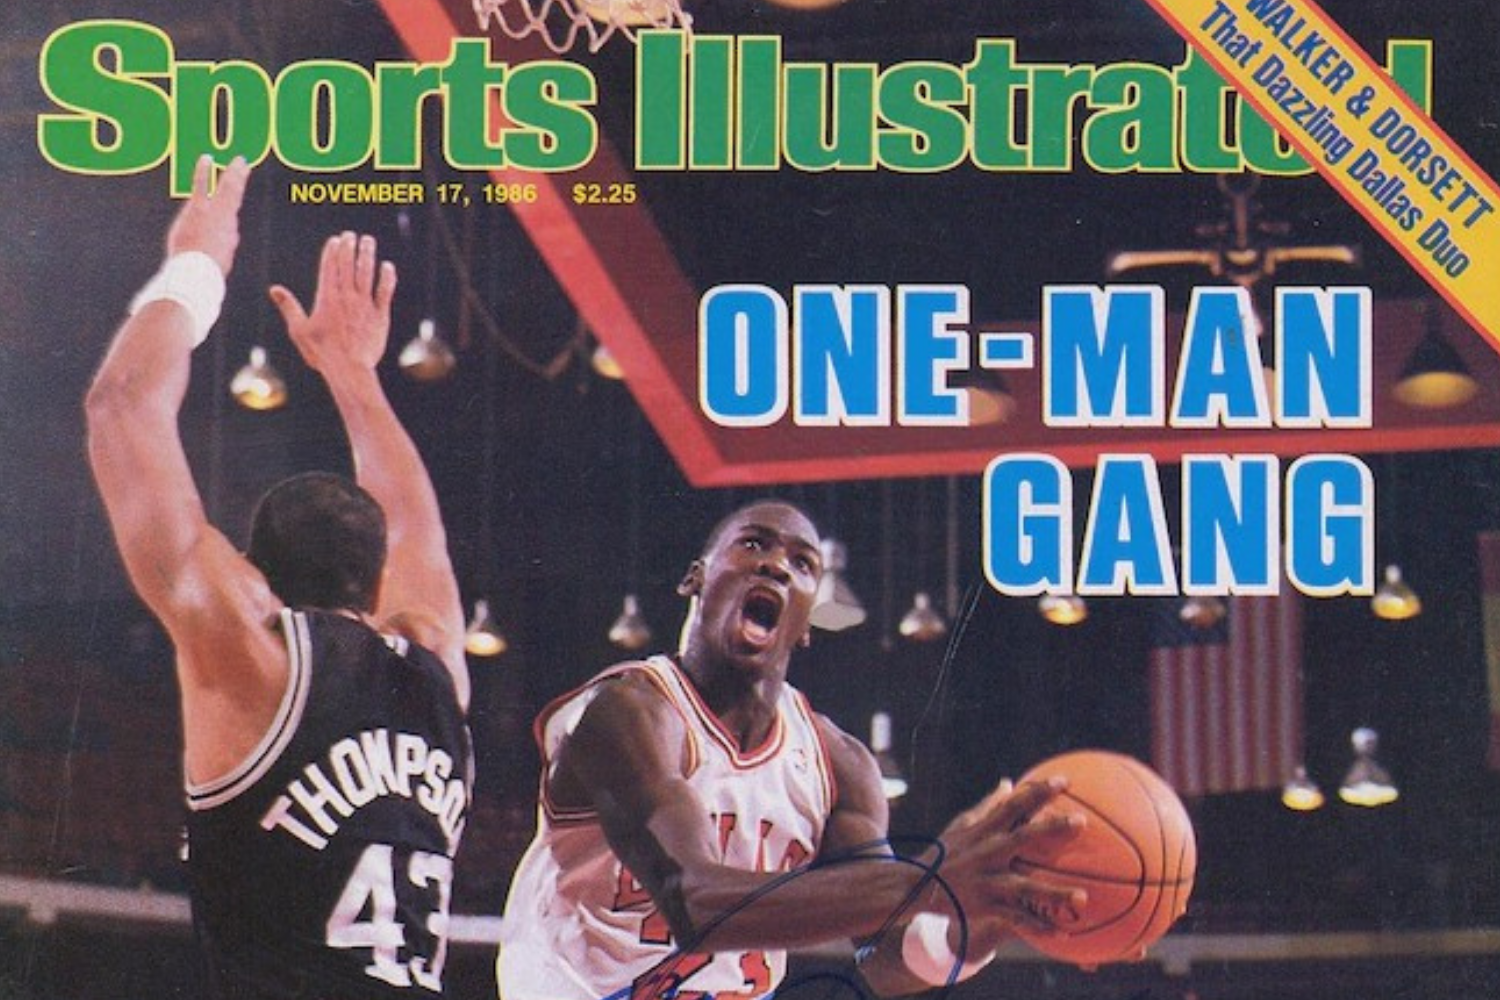 De 'Sports Illustrated' met Michael Jordan's handtekening wordt verkocht